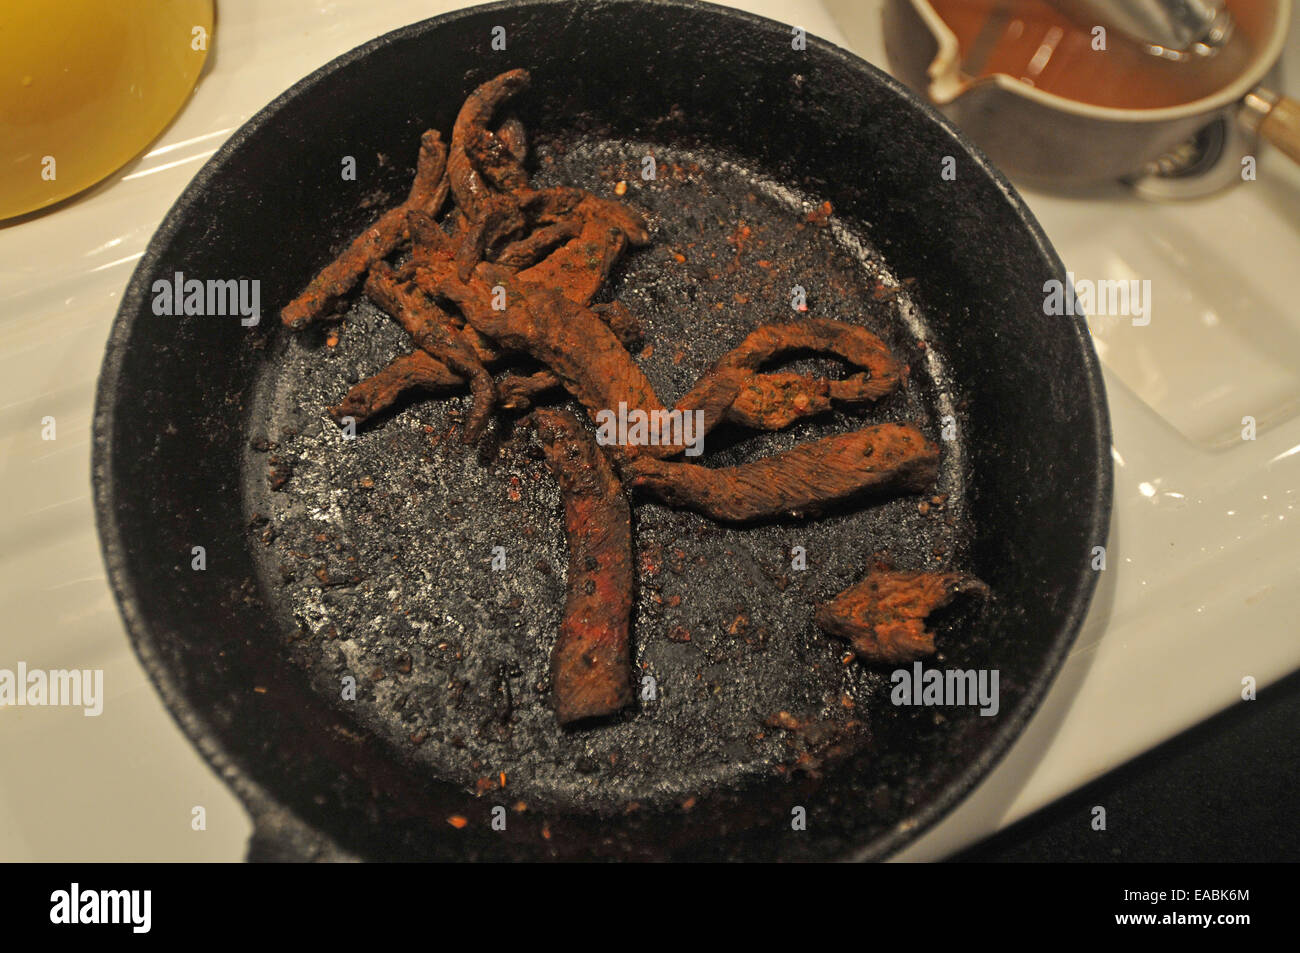 Los restos calcinados de una cena quemada Foto de stock